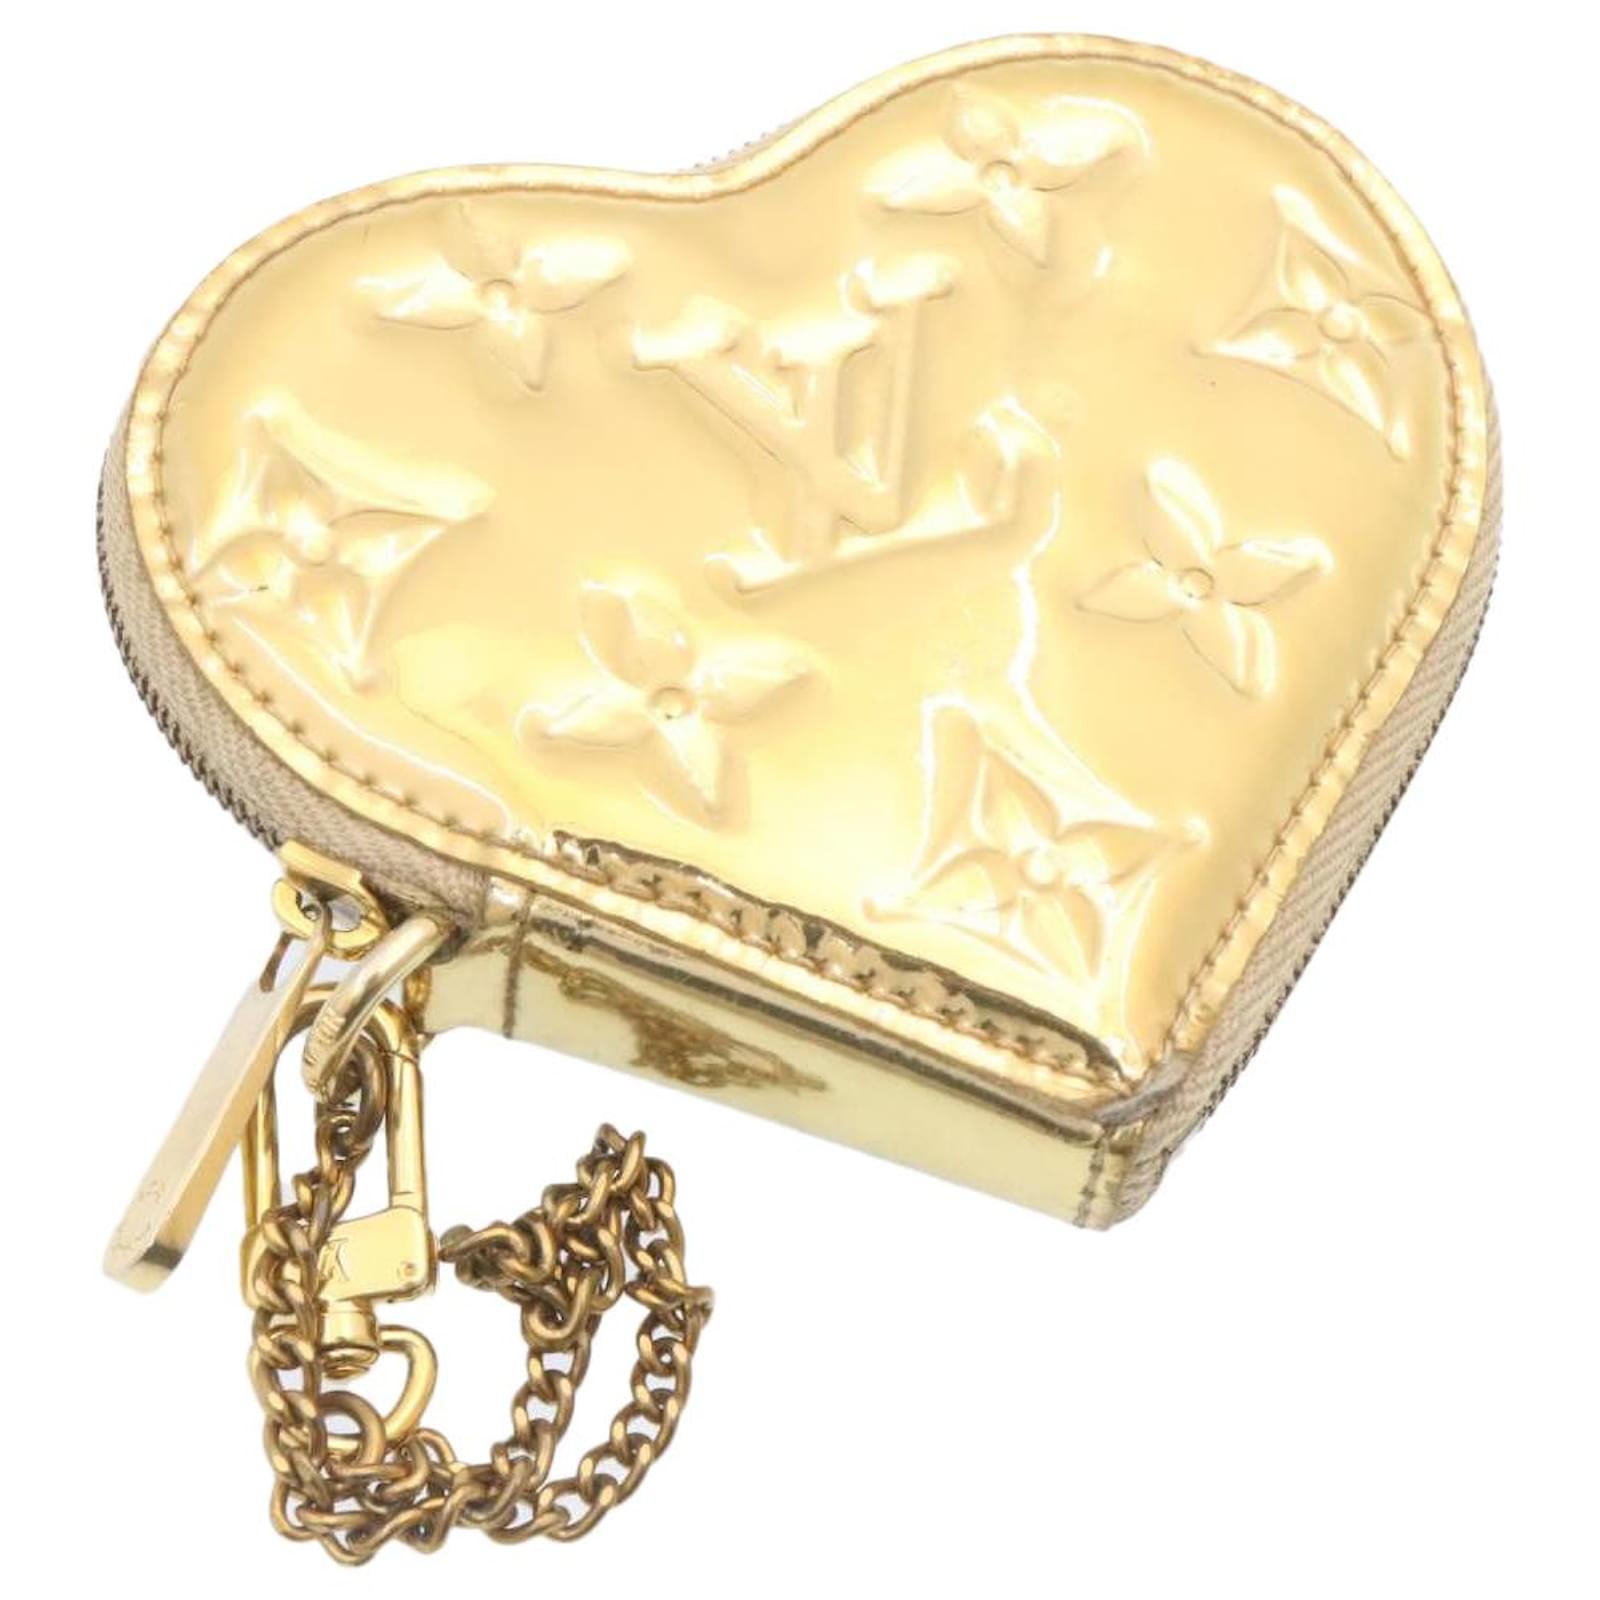 LOUIS Vuitton Monogram Coeur (Heart) Coin Purse